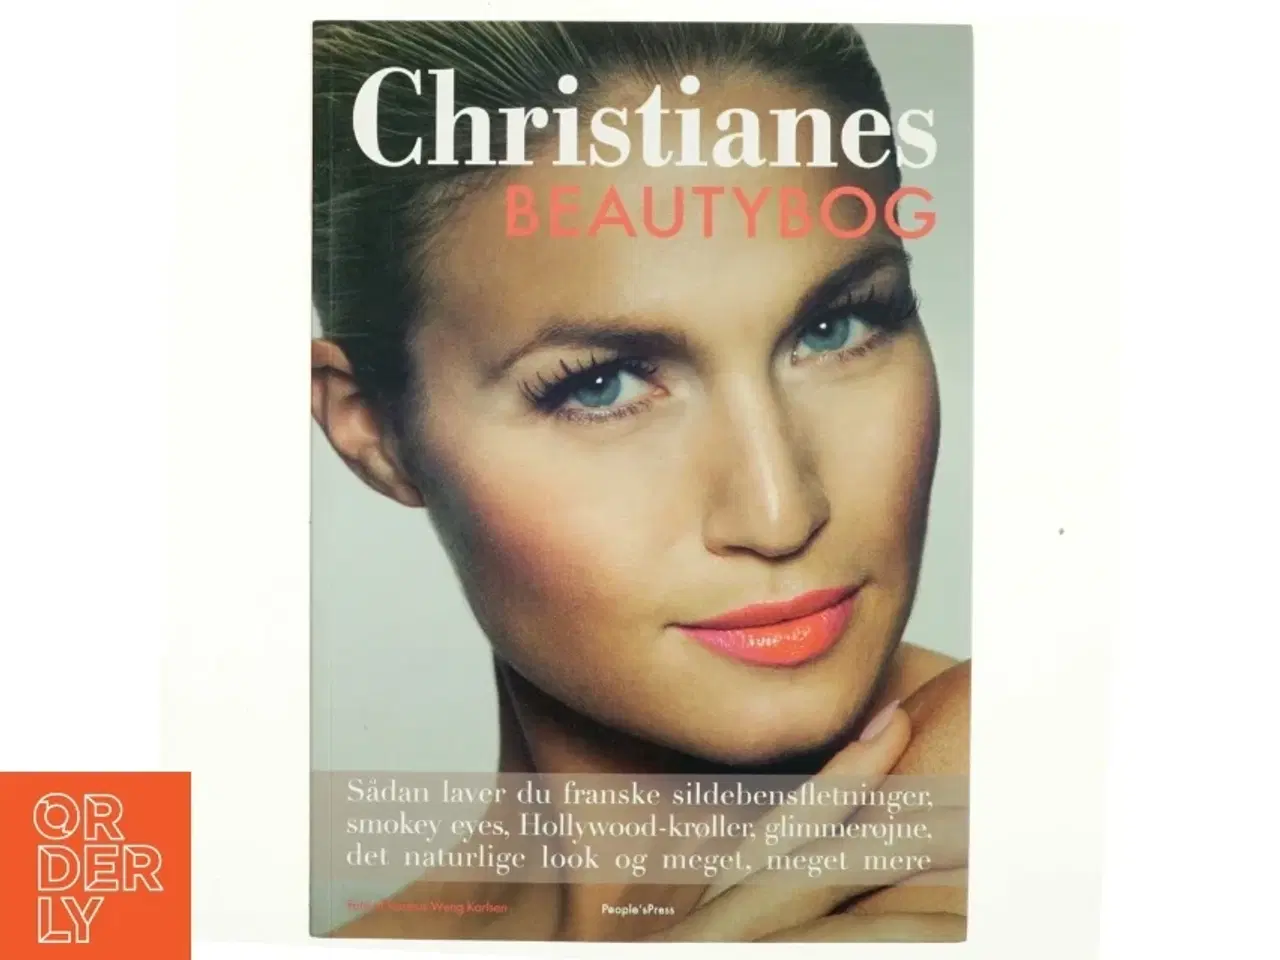 Billede 1 - Christianes beautybog af Christiane Schaumburg-Müller (Bog)